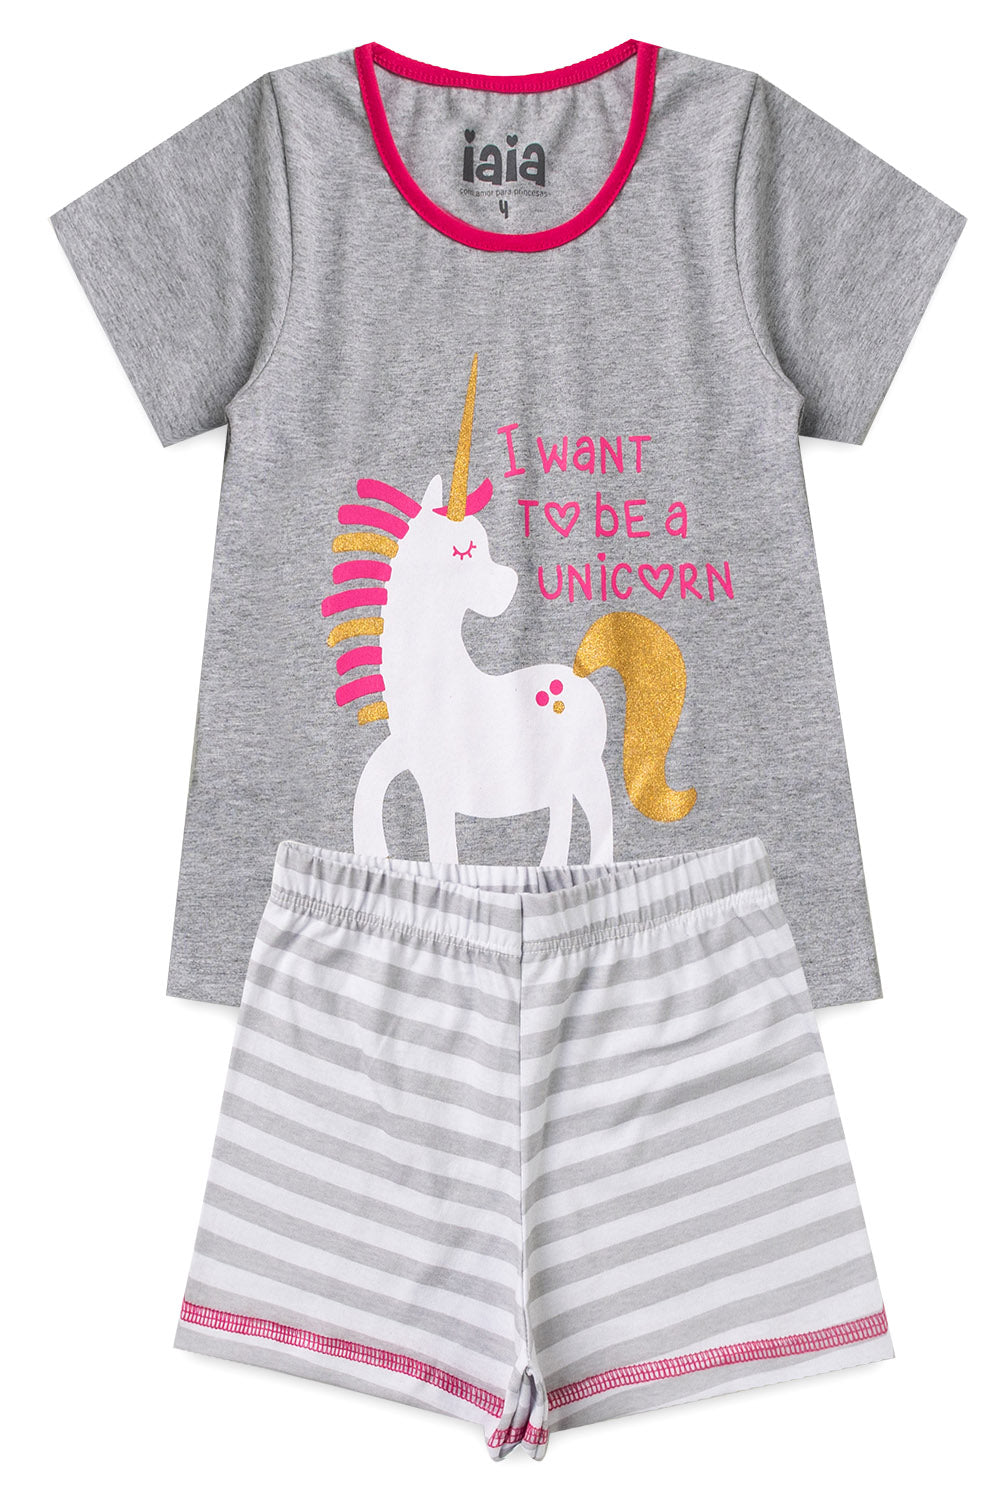 UNICORN Girl T-Shirts + Shorts Pajama Set